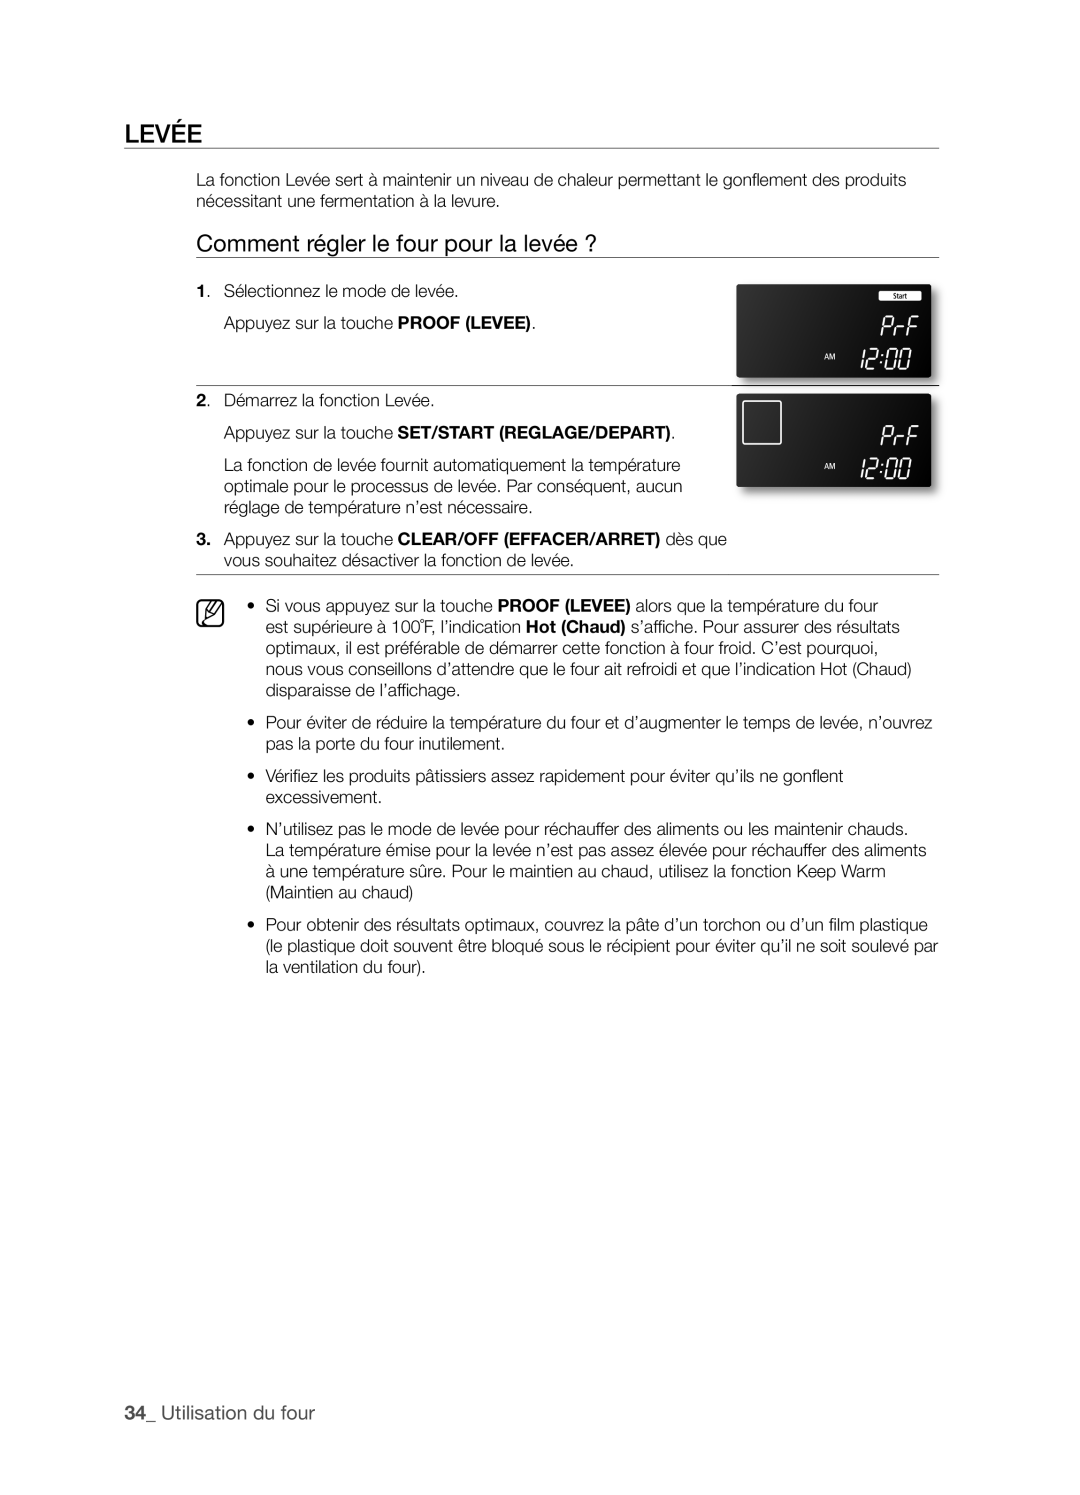 Samsung FTQ386LWX user manual LEVéE, Comment régler le four pour la levée ?, _ Utilisation du four 